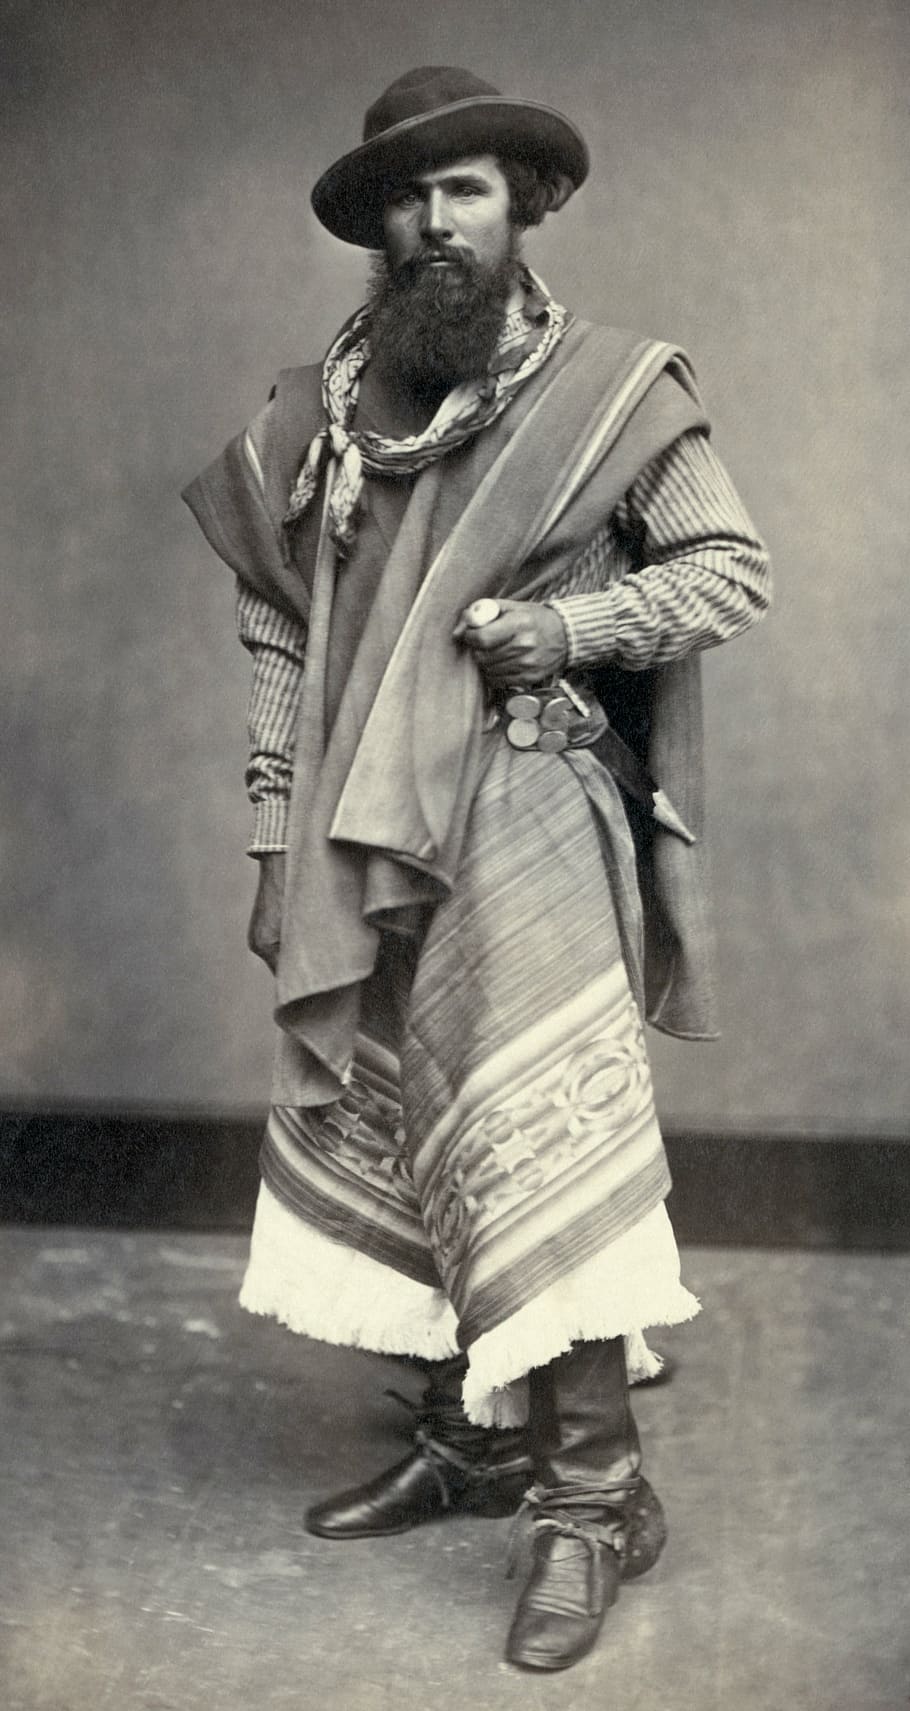 Gaucho, indio, argentino, hombre, blanco y negro, 1868, longitud total, ropa, una persona, vello facial